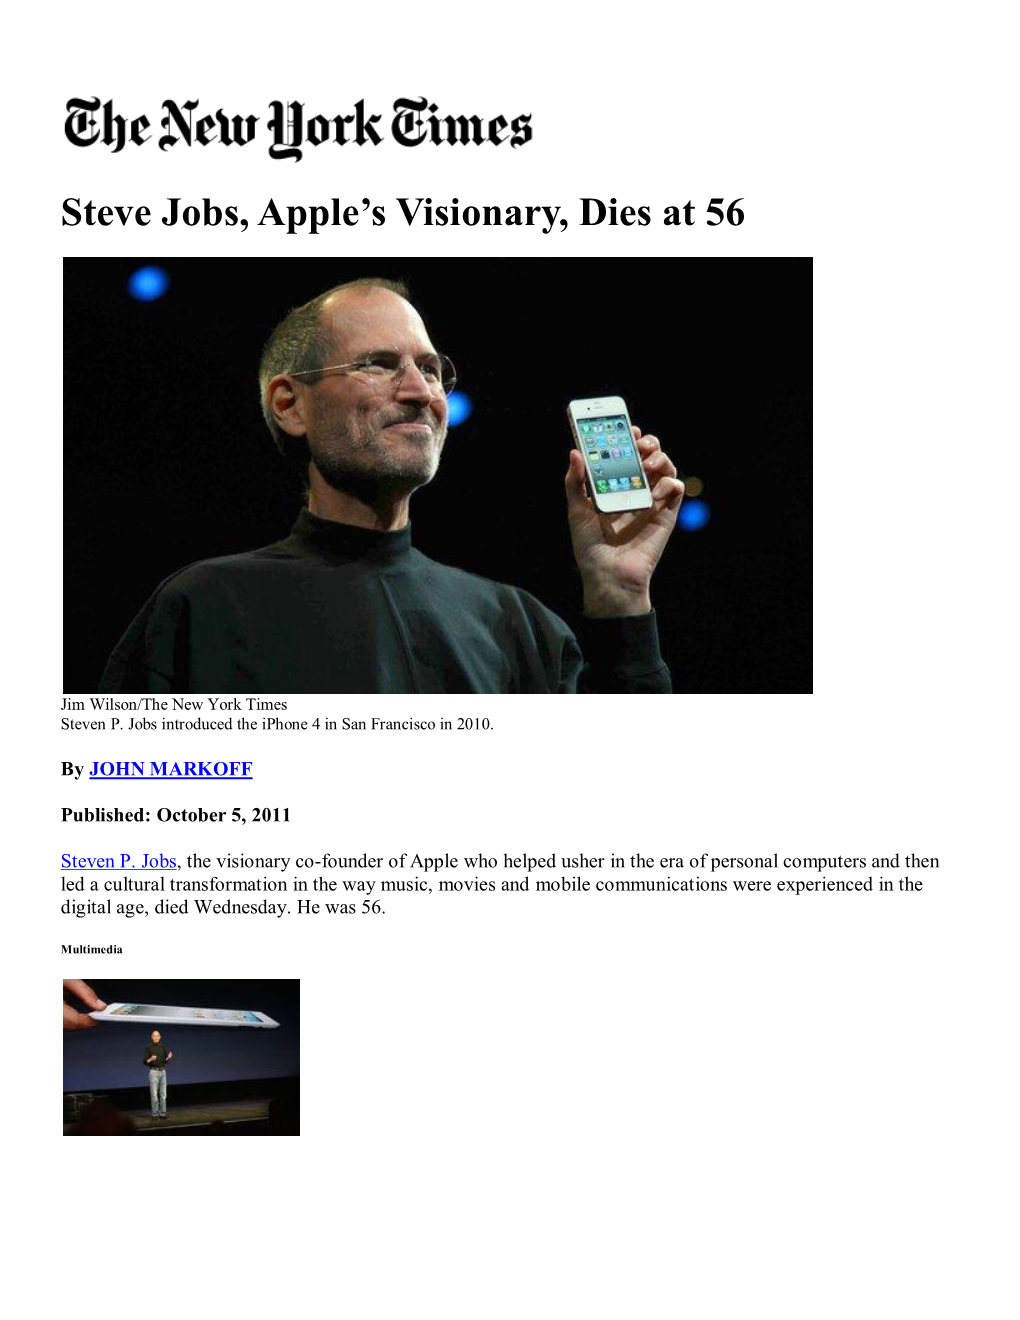 Steve Jobs, Apple's Visionary, Dies at 56